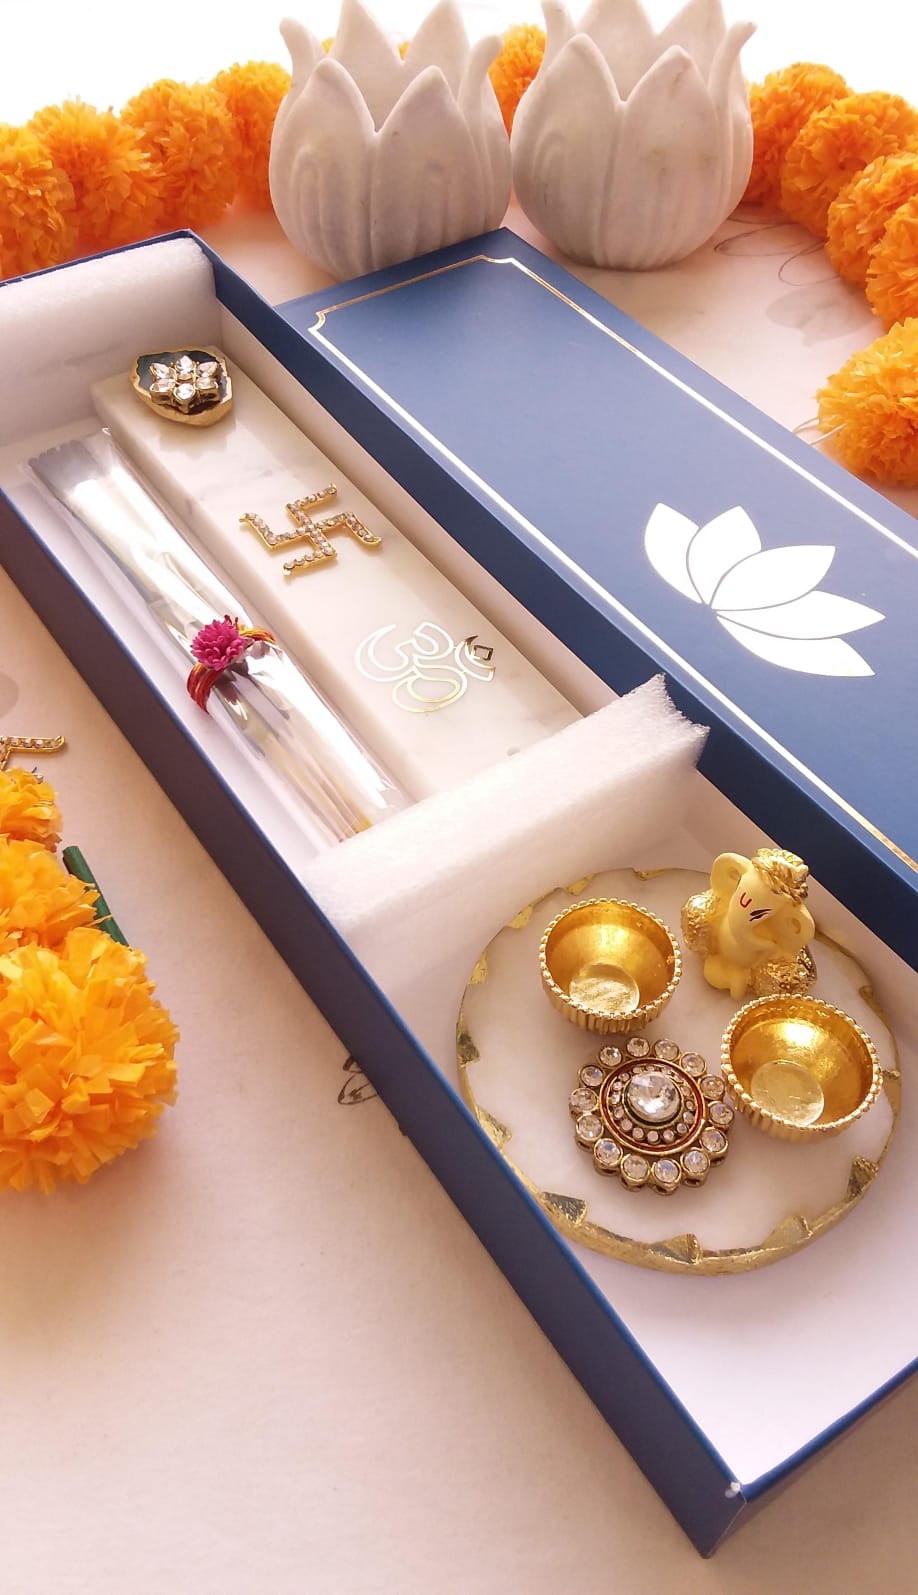 Kanthi - Diwali hamper and gift